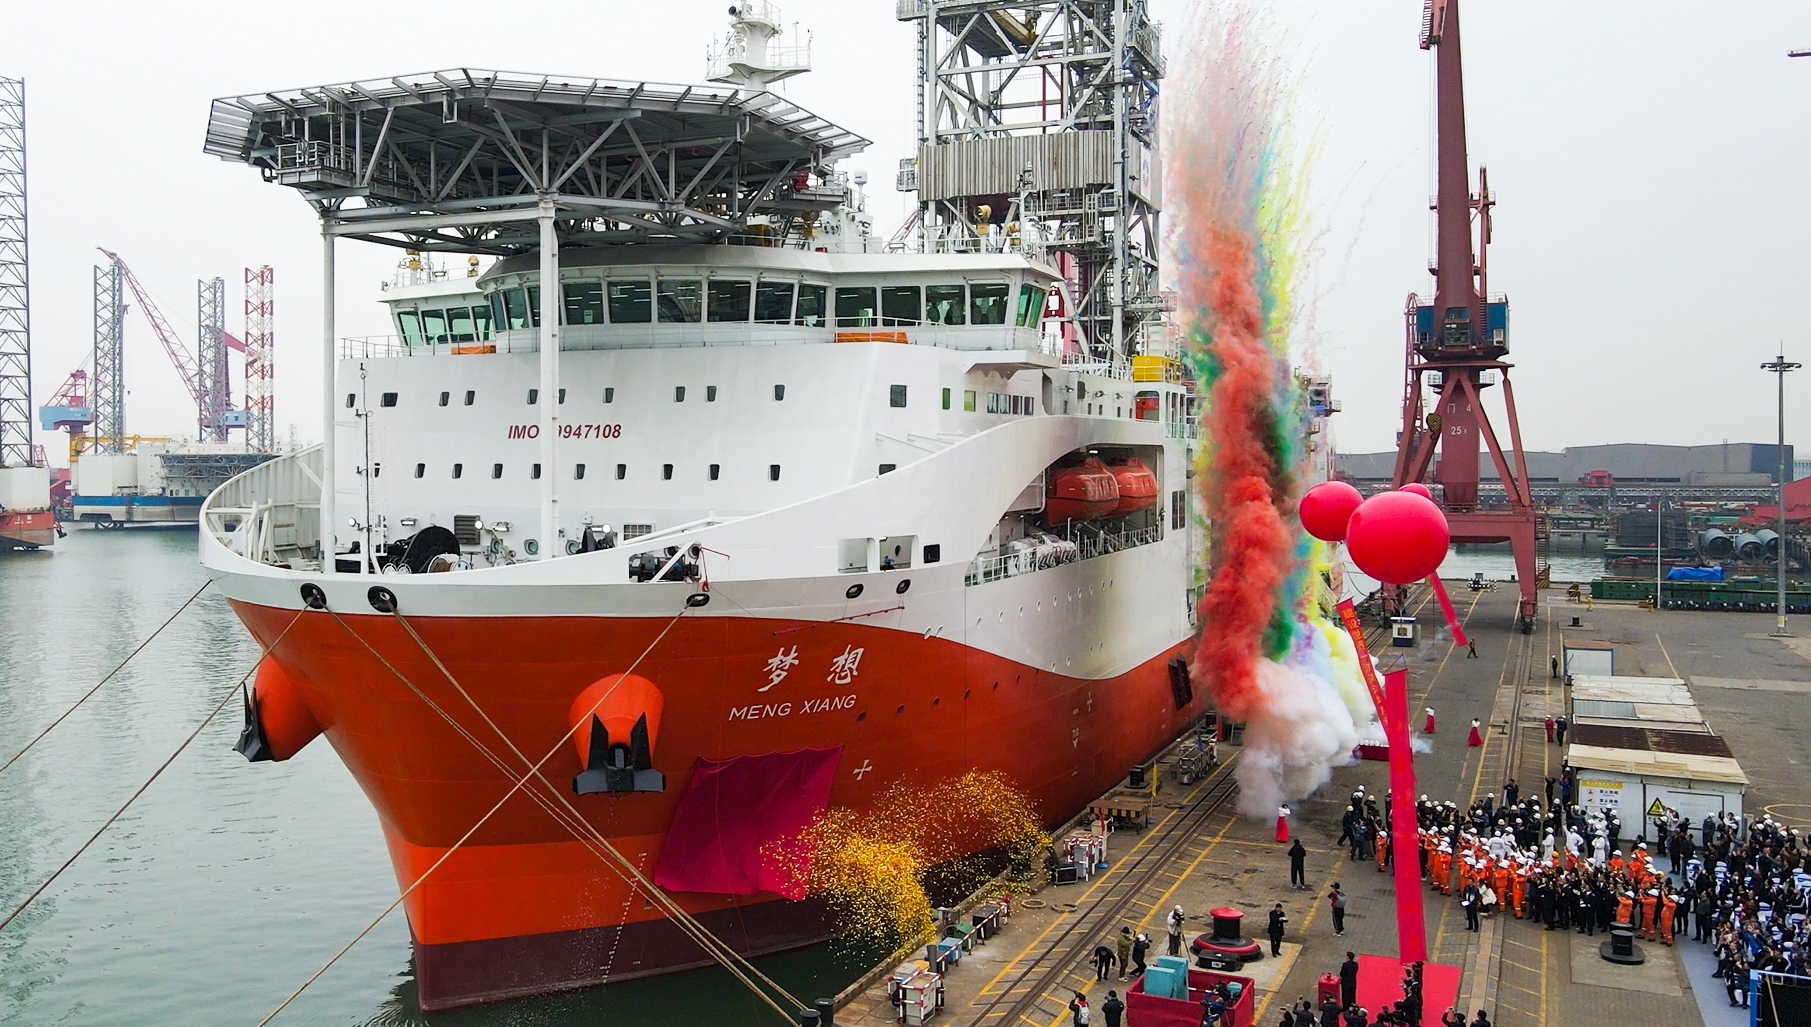 我国自主设计建造的首艘大洋钻探船正式命名为“梦想号”,在广州南沙下水试航